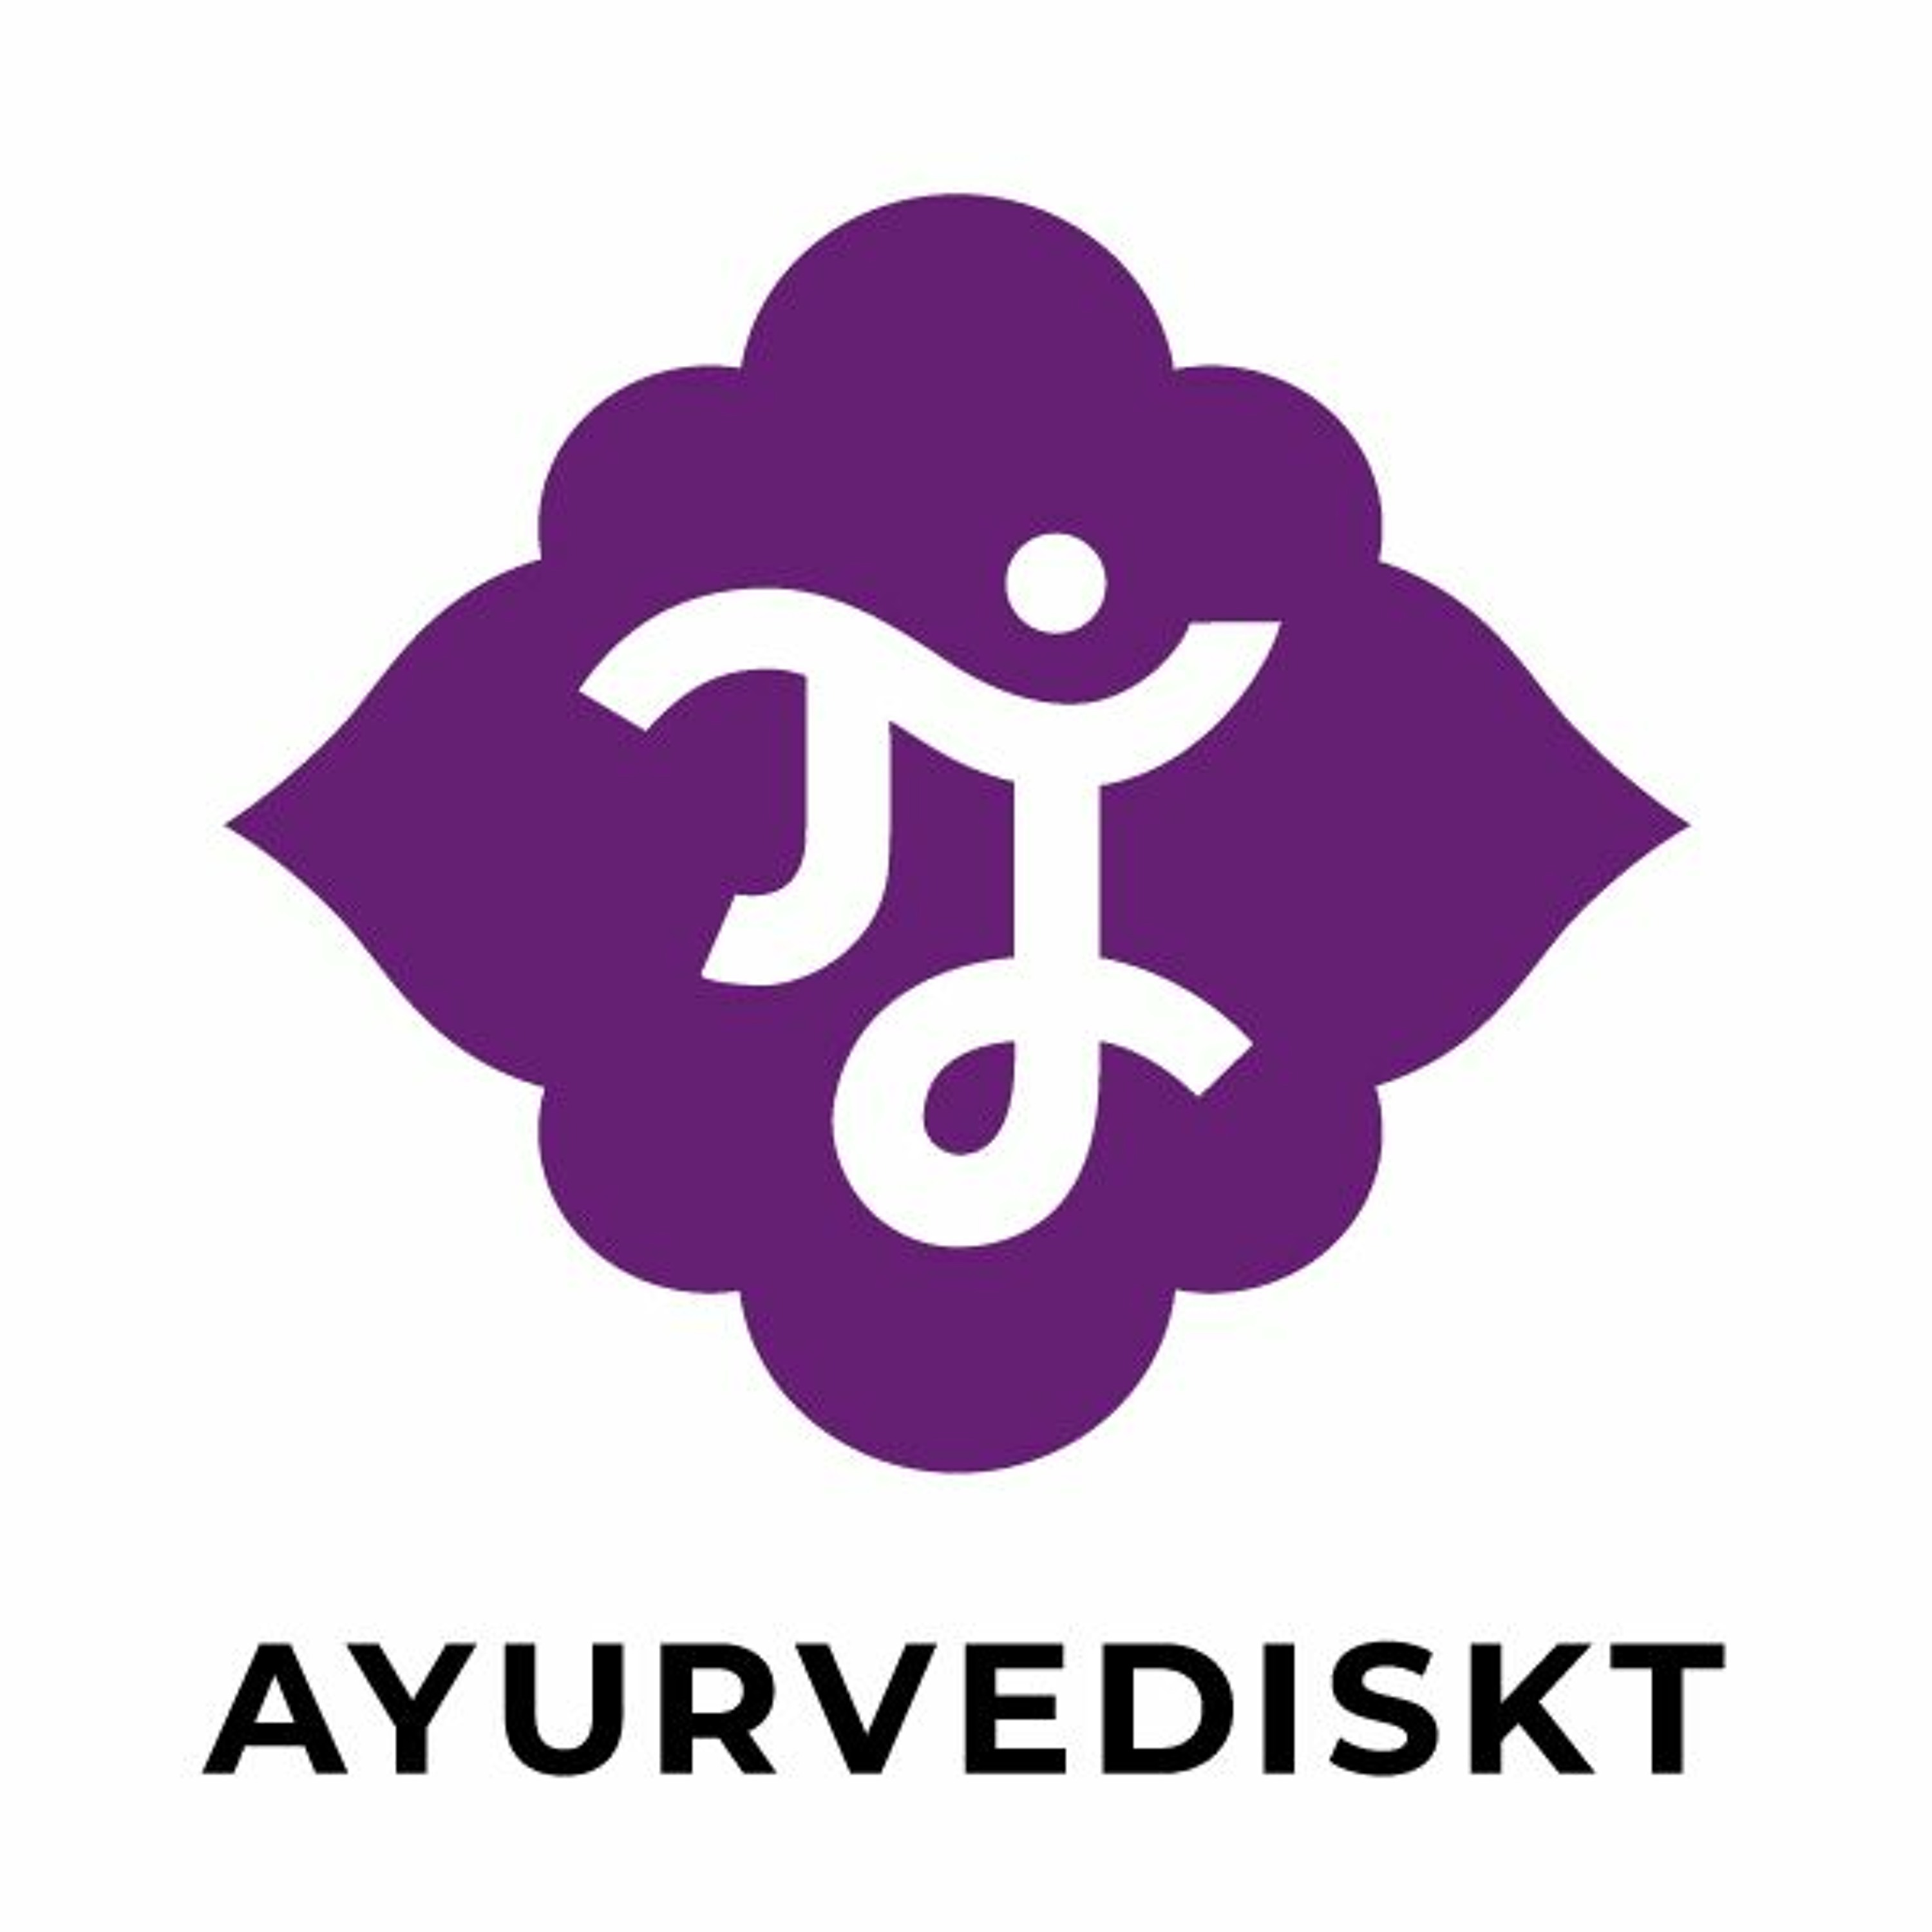 Podden Ayurvediskt avsnitt 5: Ayurveda management med Eva Forsberg Schinkler